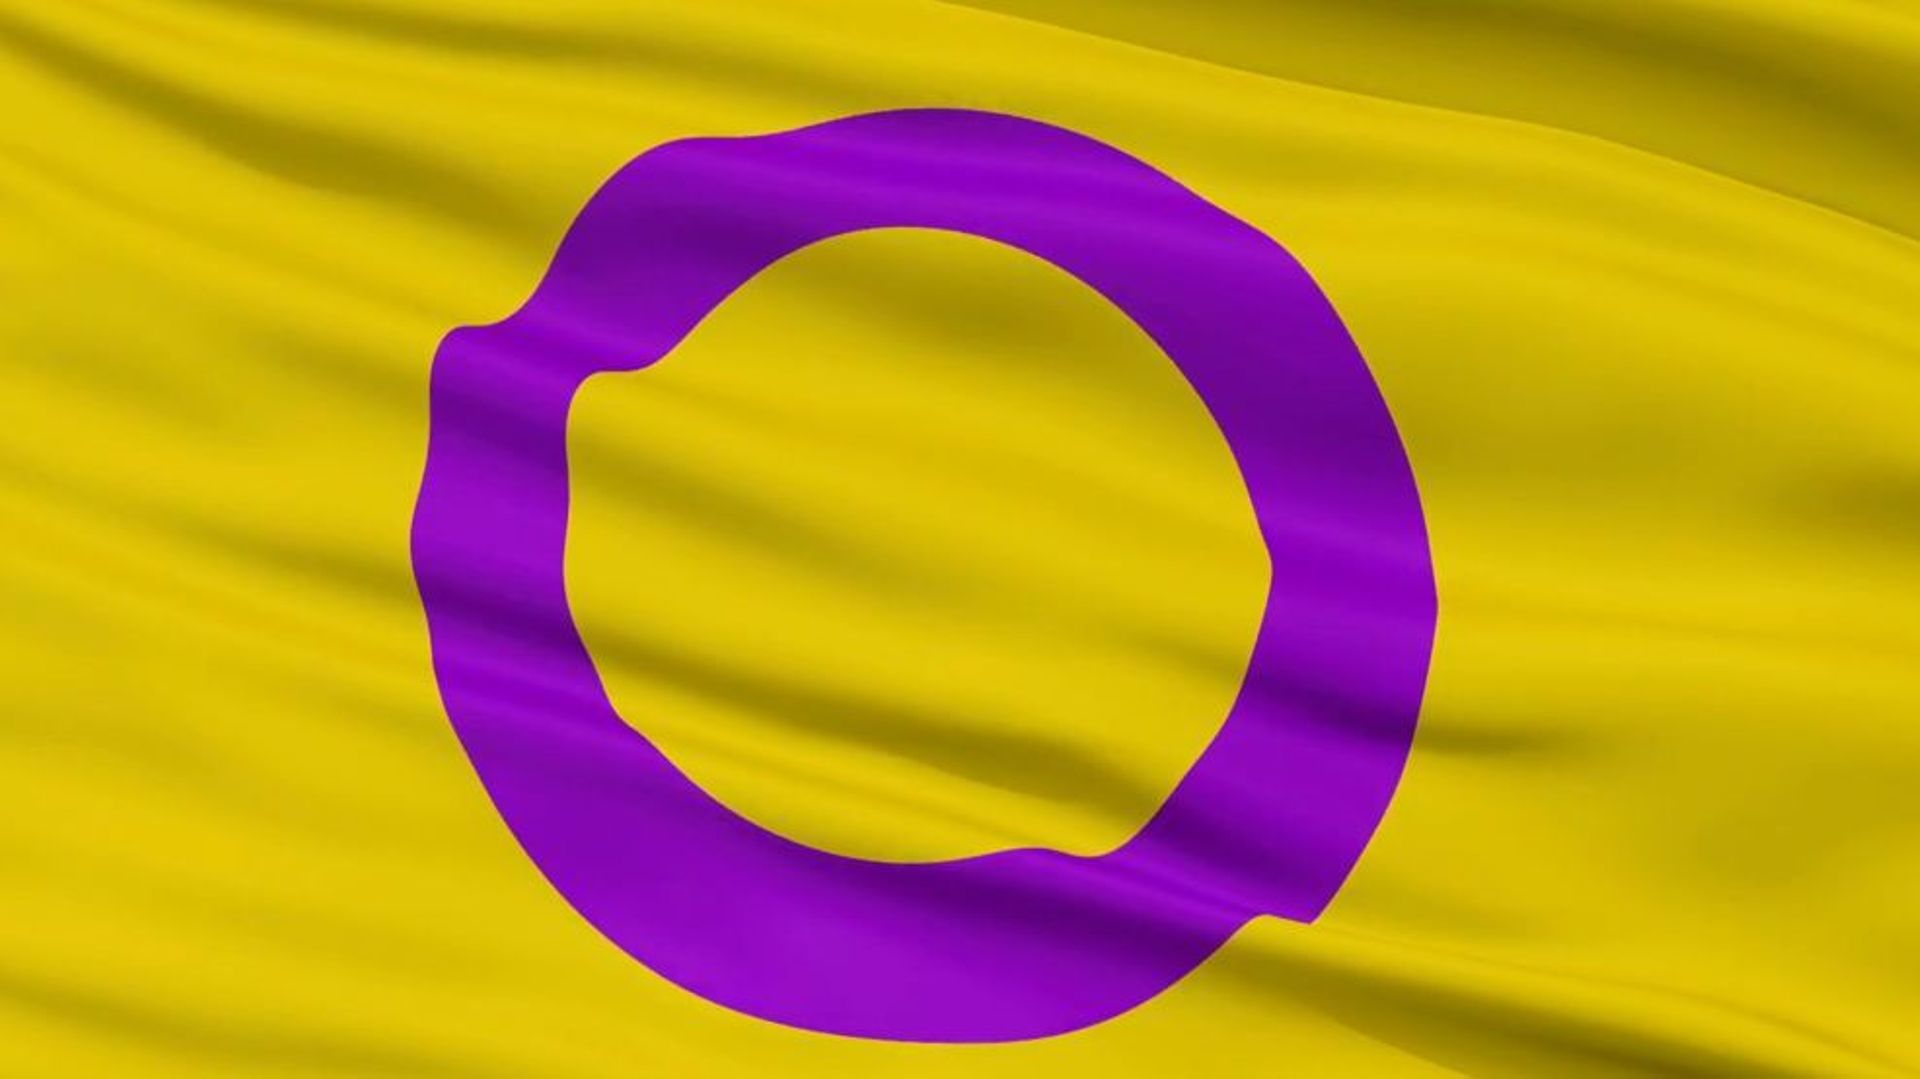 drapeau intersexe : le violet est l'addition du bleu et du rose, le cercle fermé symbolise la plénitude, le jaune est non associé aux rôles de genre.